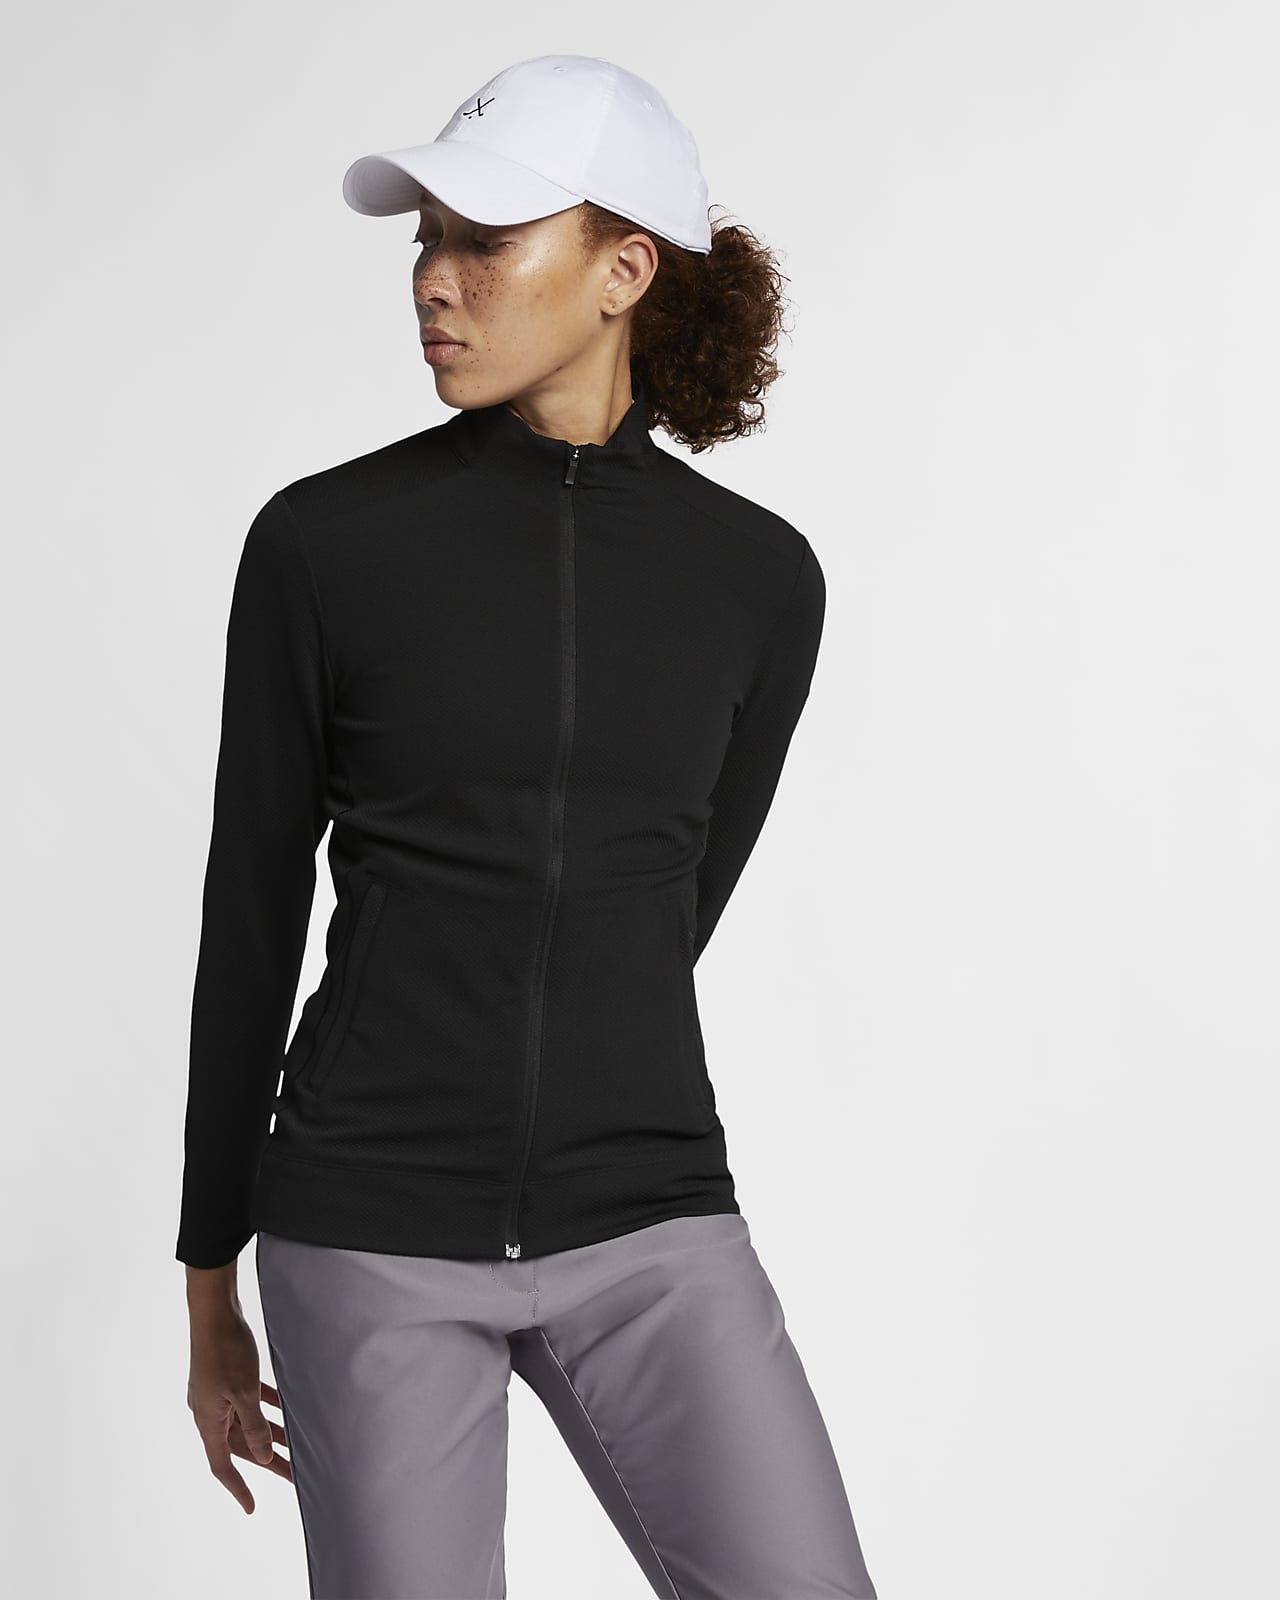 Nike Dri-FIT UV Women's Golf Jacket 